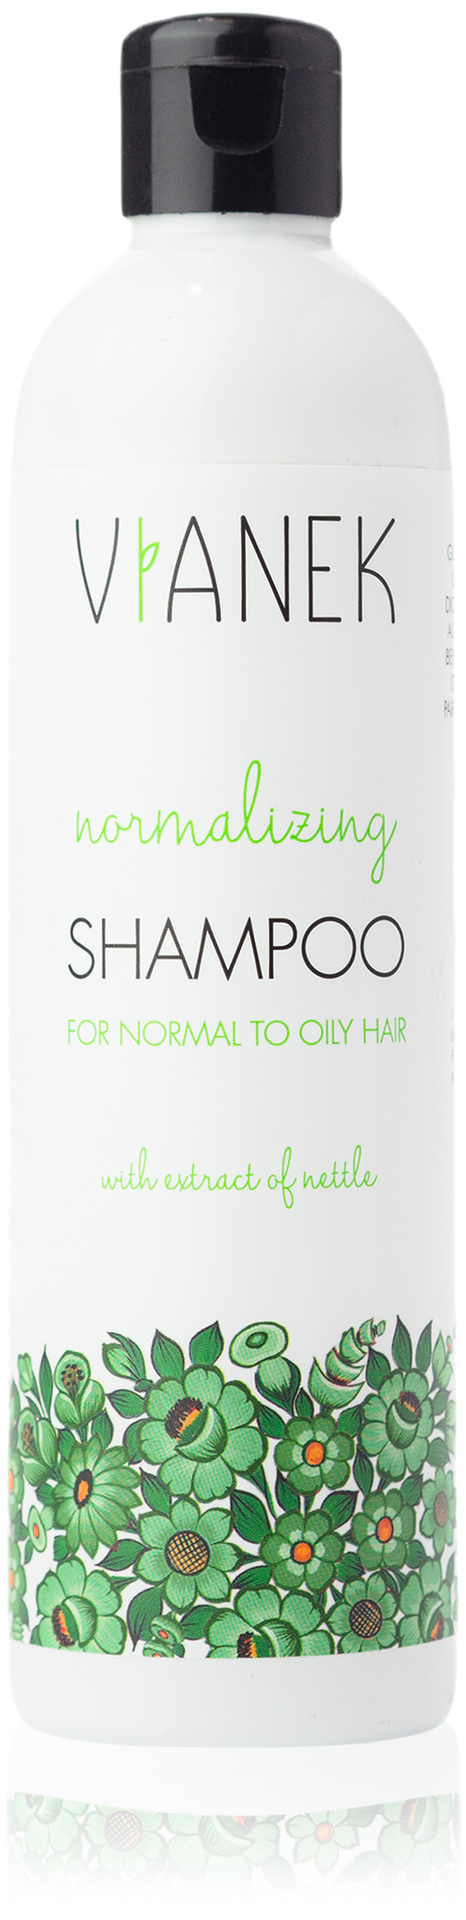 Vianek normalizujący szampon do włosów przetłuszczających się 300 ml